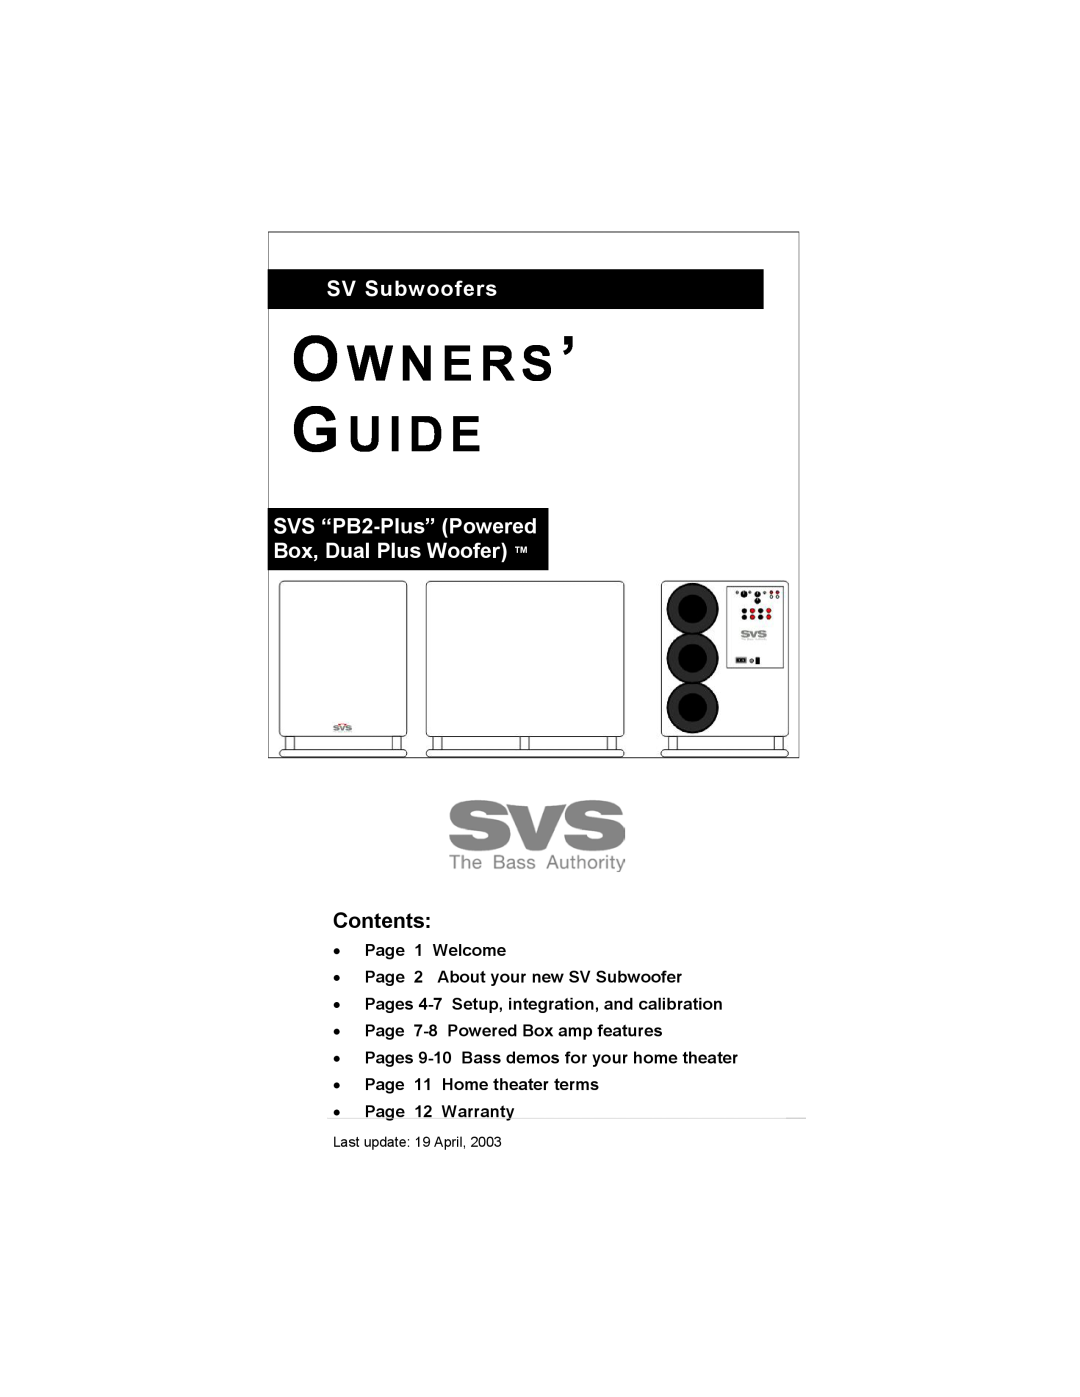 SV Sound warranty O W N E R S ’ Gu I D E, SV Subwoofers, SVS “PB2-Plus”Powered Box, Dual Plus Woofer, Contents 